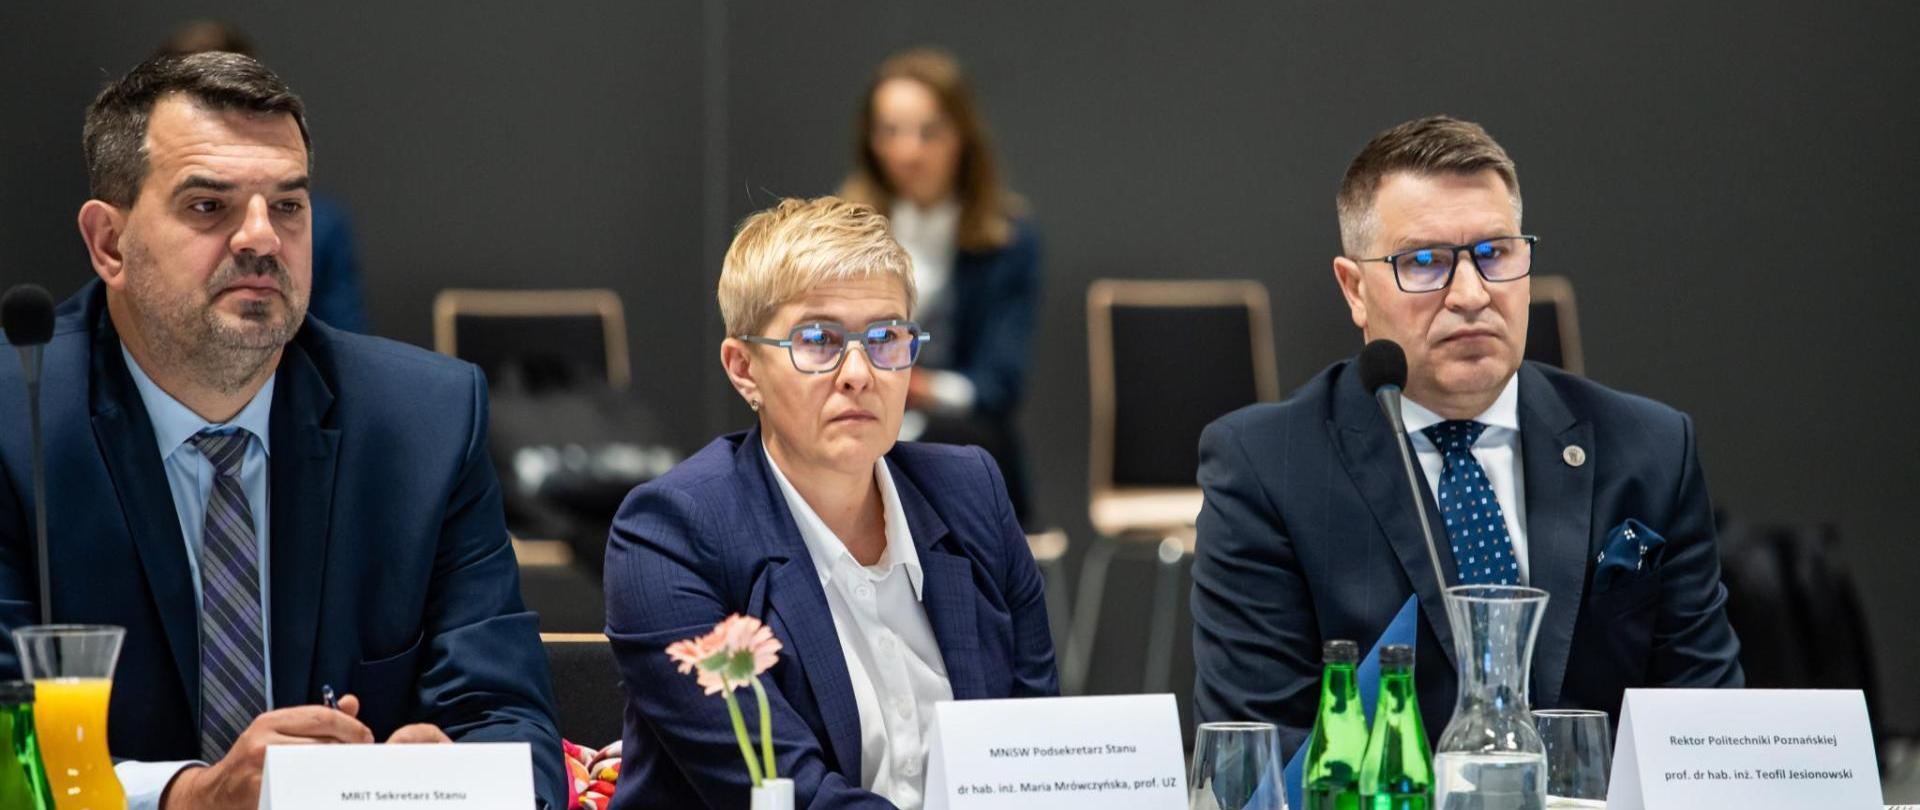 Wiceminister Maria Mrówczyńska siedzi za stołem, obok niej dwóch mężczyzn w garniturach.